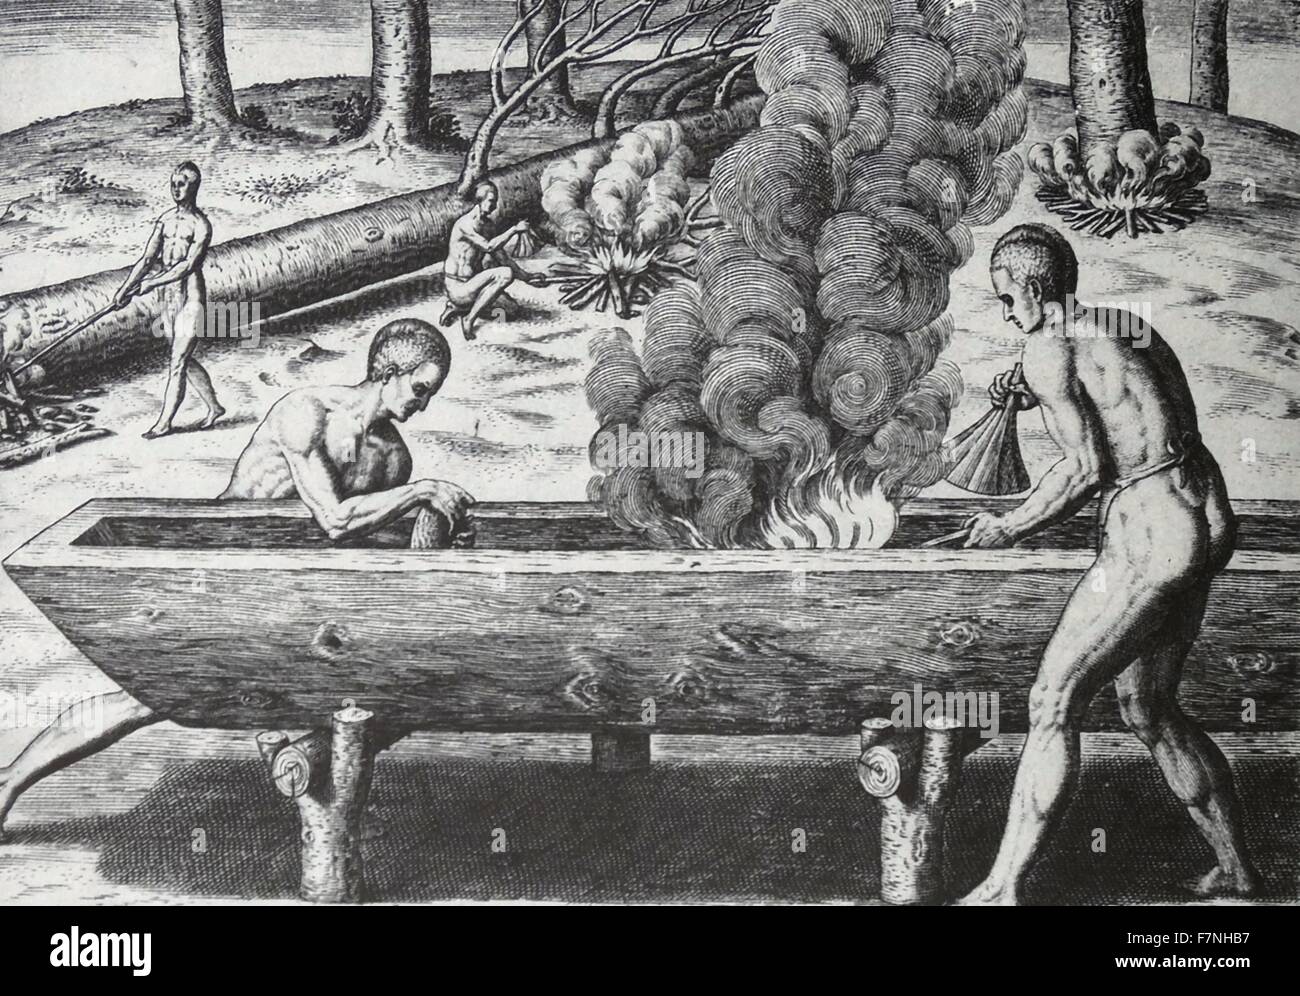 Abbildung zeigt Indianer Kanu machen. Datiert 1810 Stockfoto